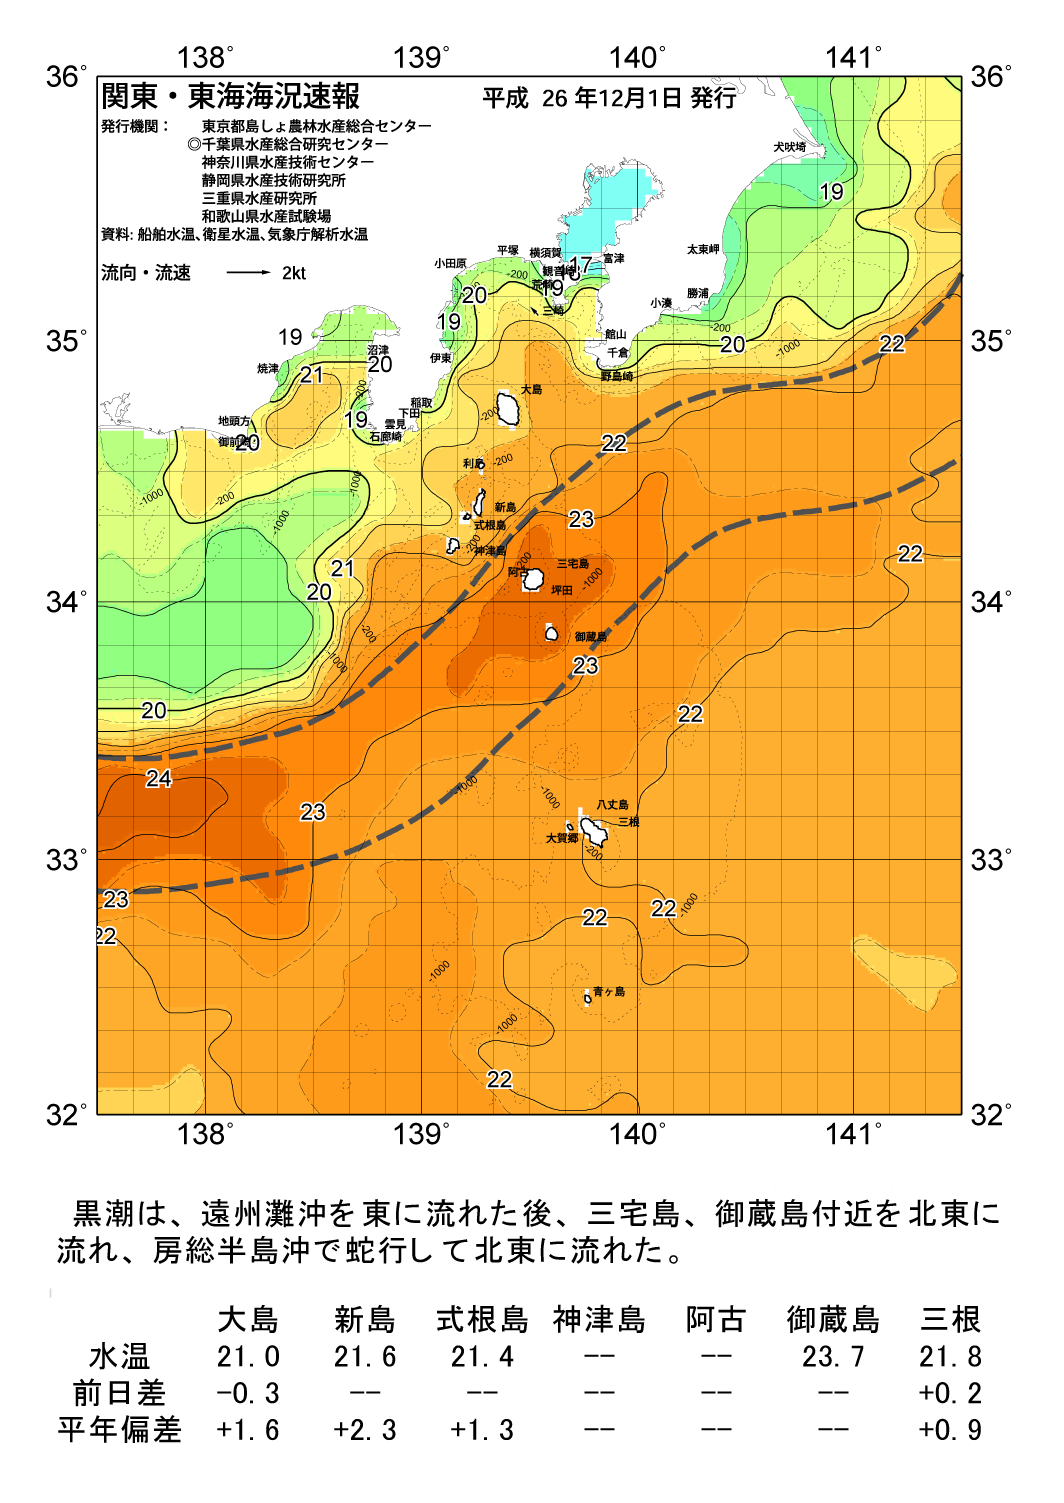 海の天気図14年12月1日 東京都島しょ農林水産総合センター